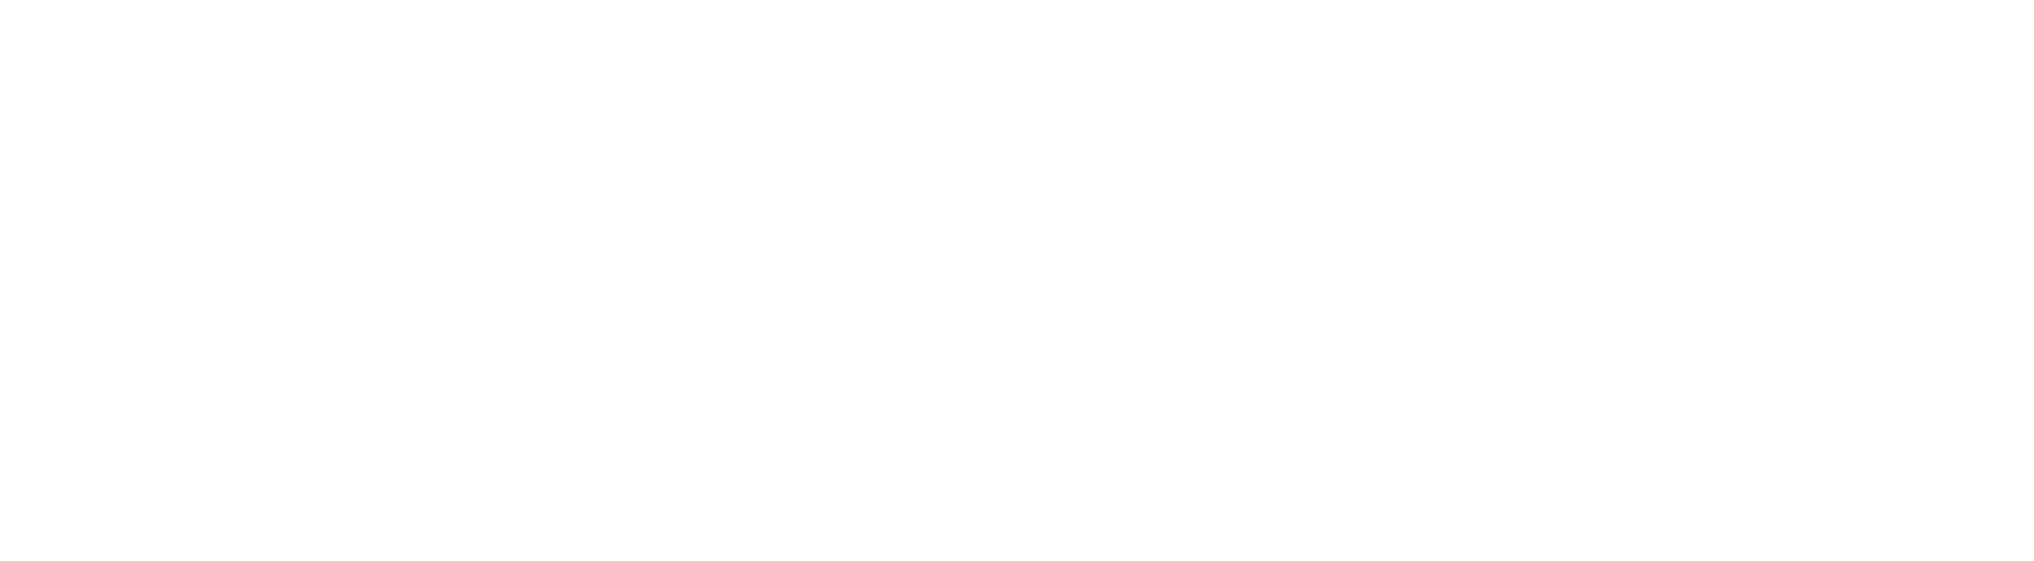 Alleus Health Analytics-white logo